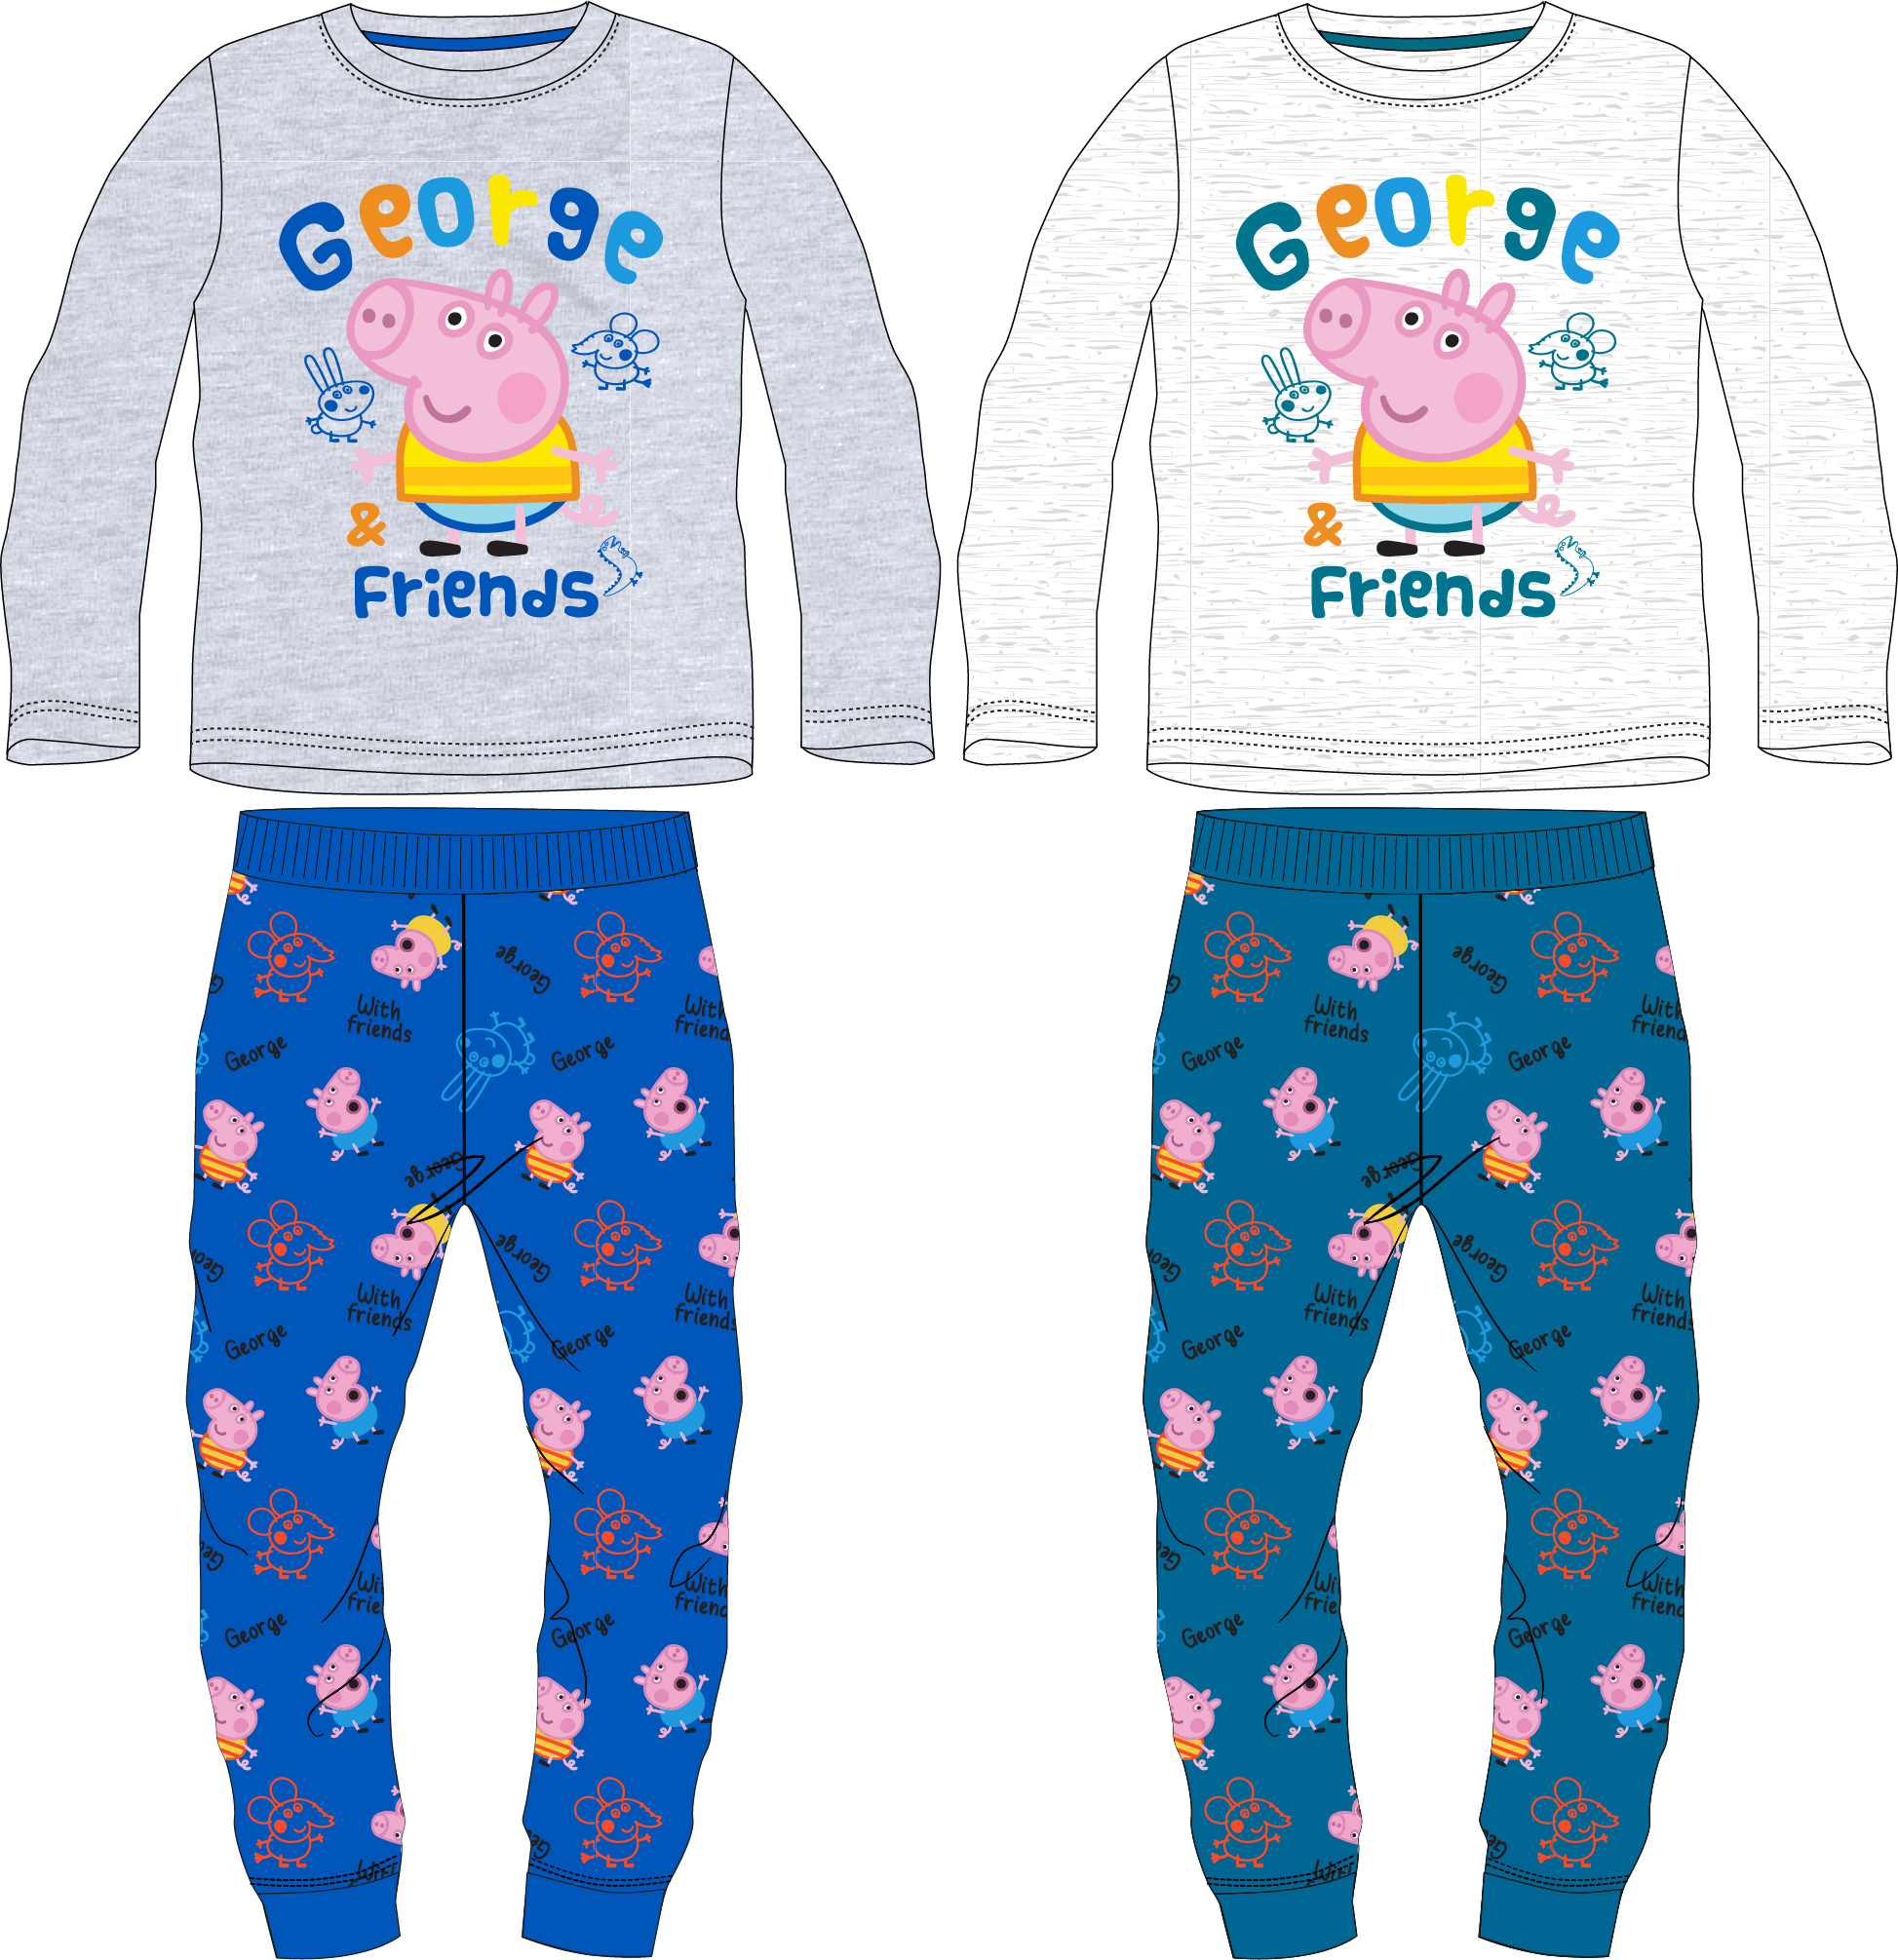 Prasátko Pepa - licence Chlapecké pyžamo - Prasátko Peppa 5204906, šedý melír / modrá Barva: Modrá, Velikost: 116